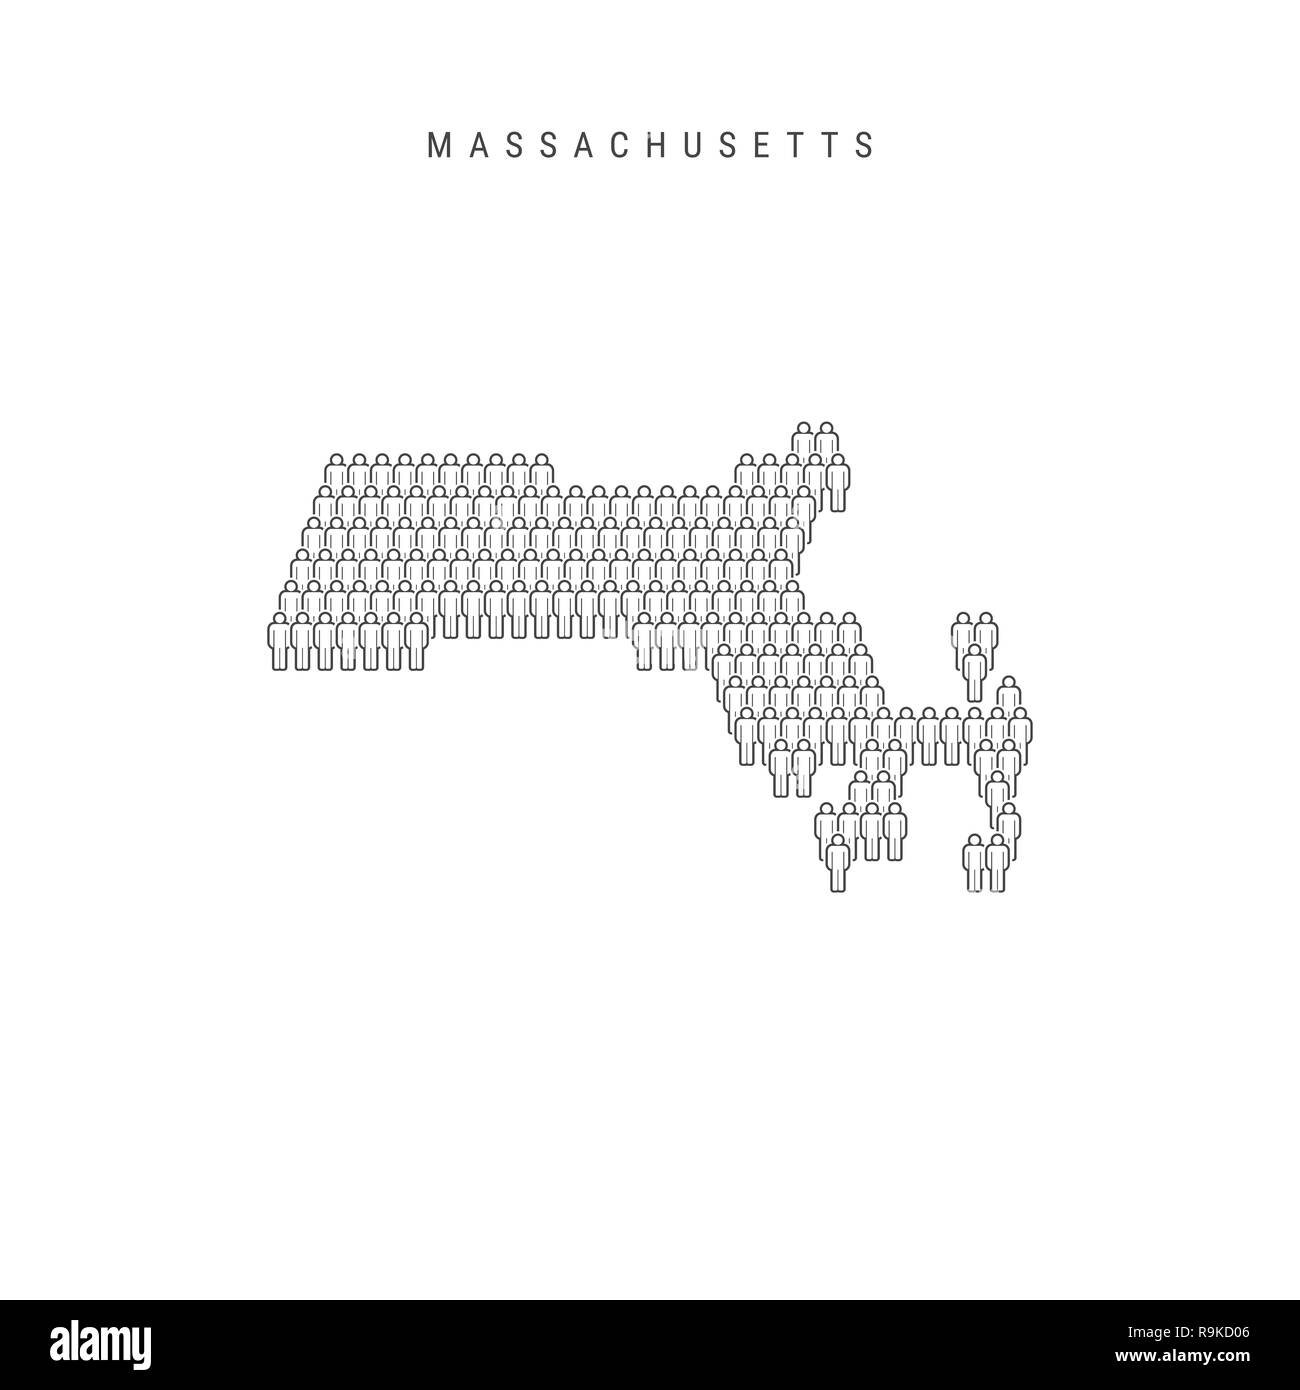 Leute Karte von Massachusetts, USA. Stilisierte Silhouette, Leute in der Form einer Karte von Massachusetts. Massachusetts Bevölkerung. Illustratio Stockfoto